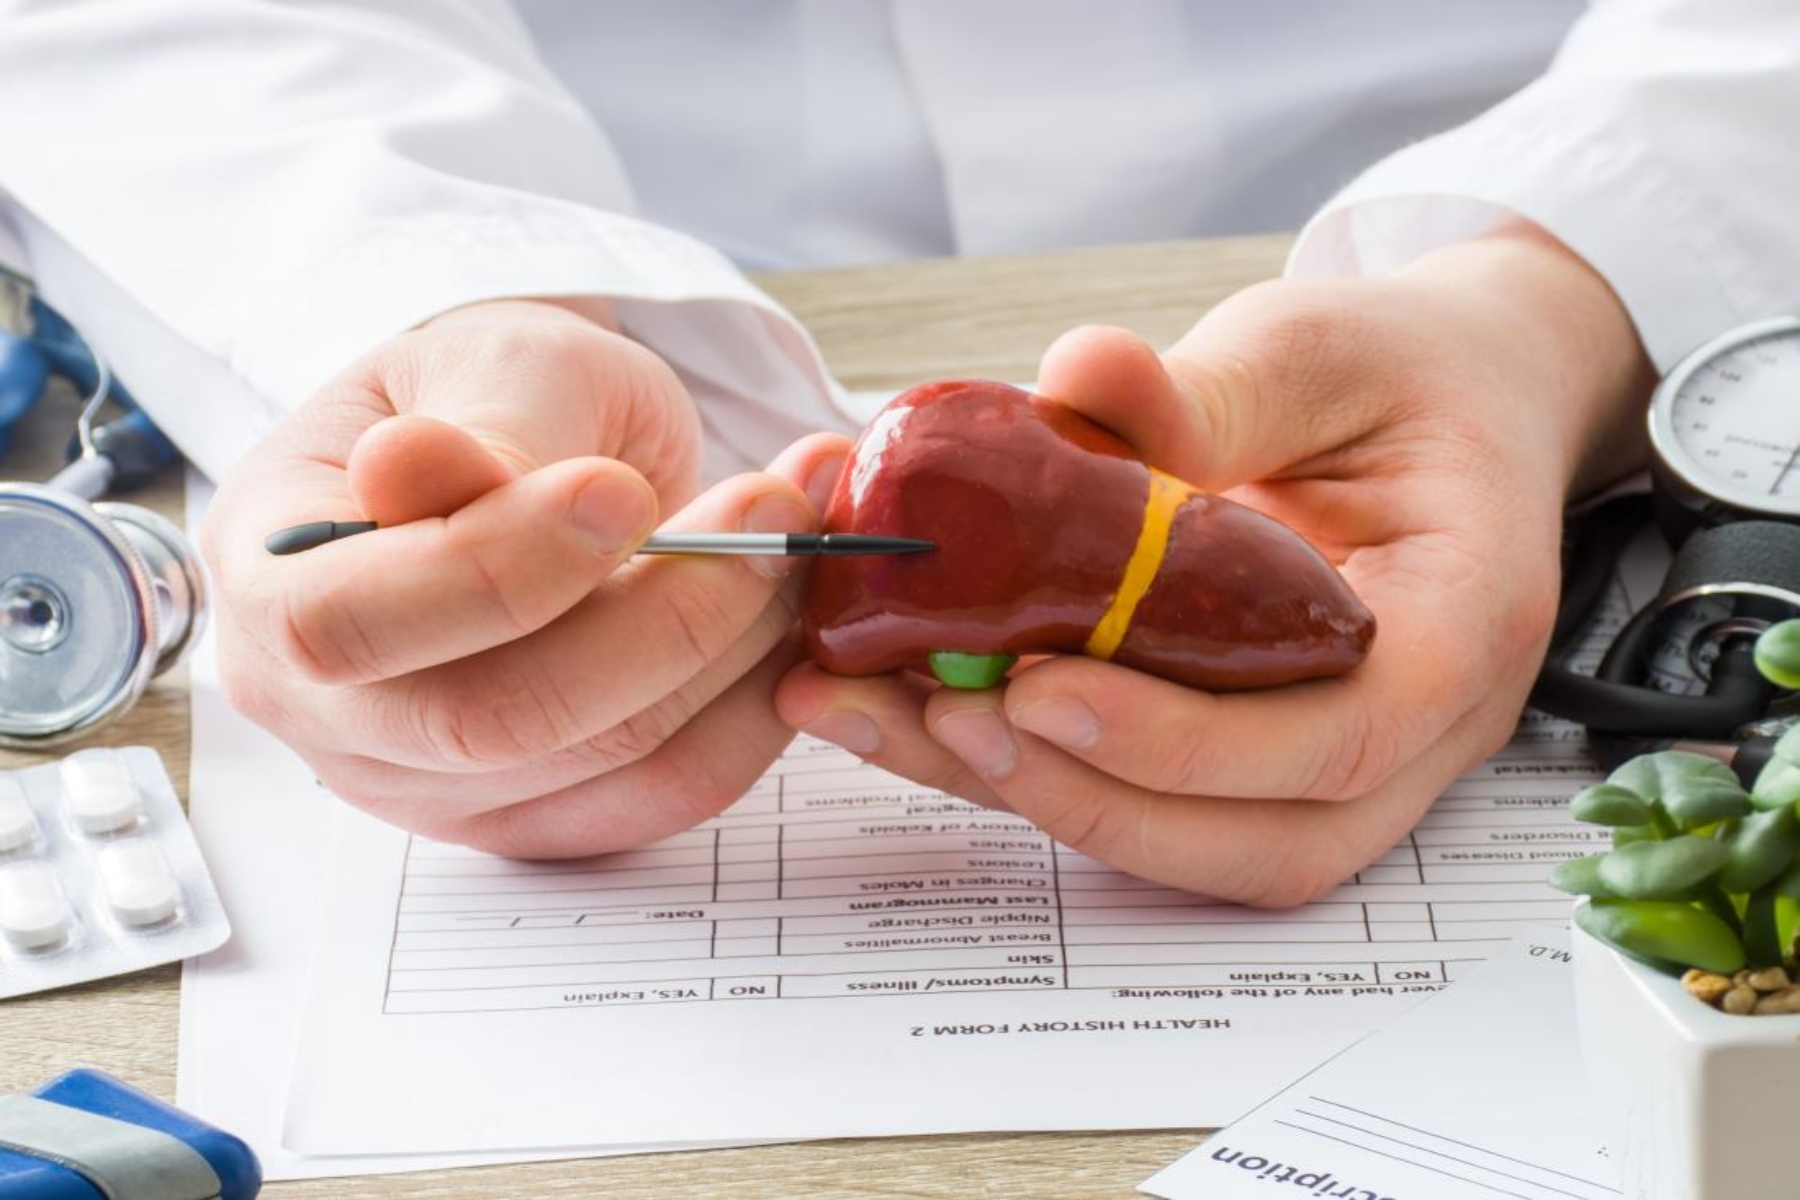 Ήπαρ καρδιά: 1 στους 4 ενήλικες έχει ηπατική διαταραχή που συνδέεται με υψηλότερο κίνδυνο καρδιακής νόσου